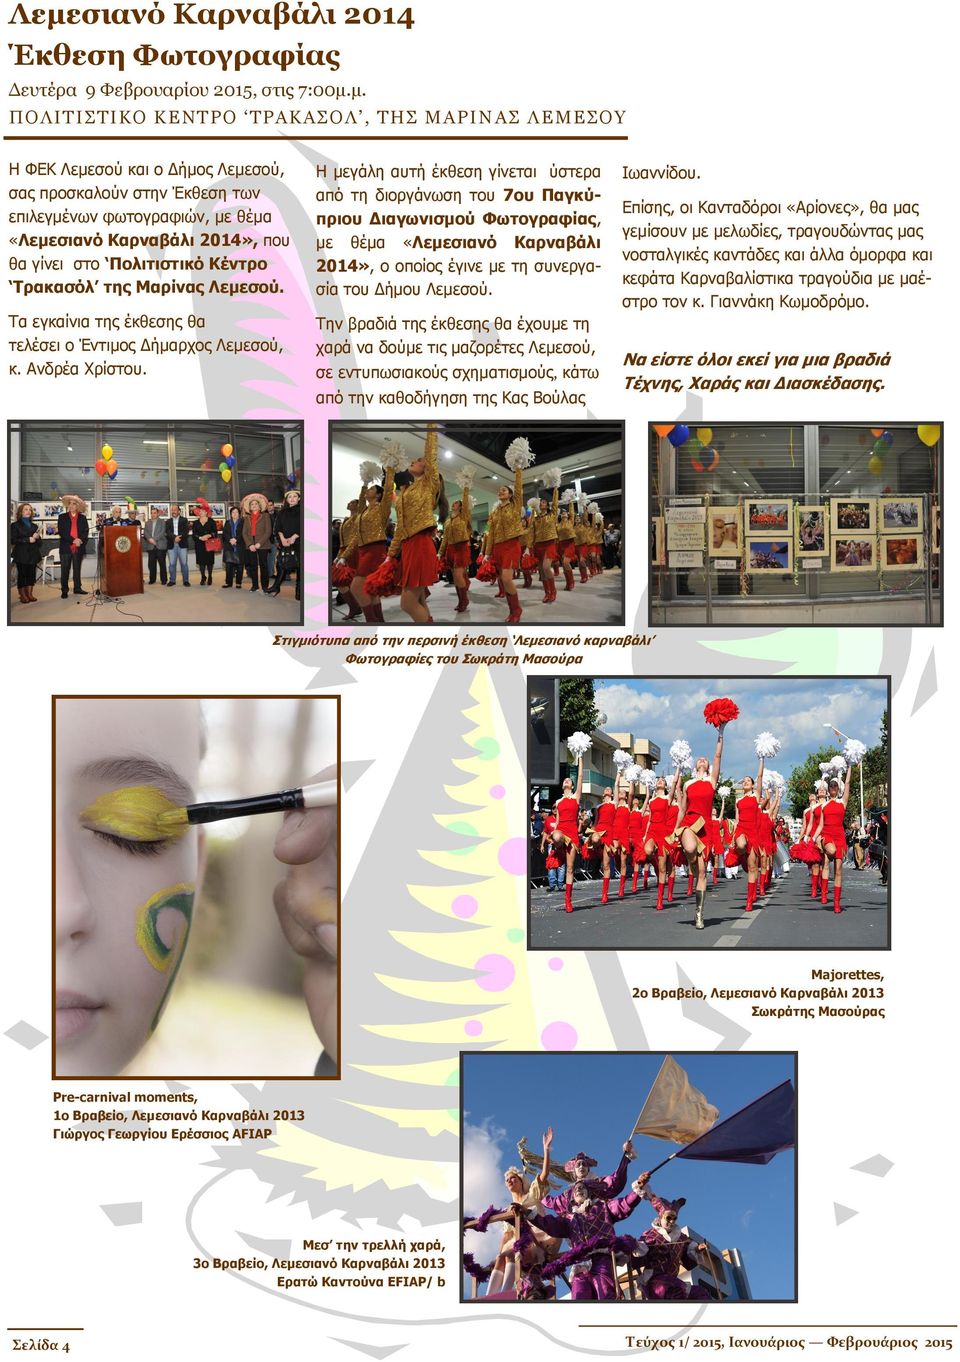 Η μεγάλη αυτή έκθεση γίνεται ύστερα από τη διοργάνωση του 7ου Παγκύπριου Διαγωνισμού Φωτογραφίας, με θέμα «Λεμεσιανό Καρναβάλι 2014», ο οποίος έγινε με τη συνεργασία του Δήμου Λεμεσού.